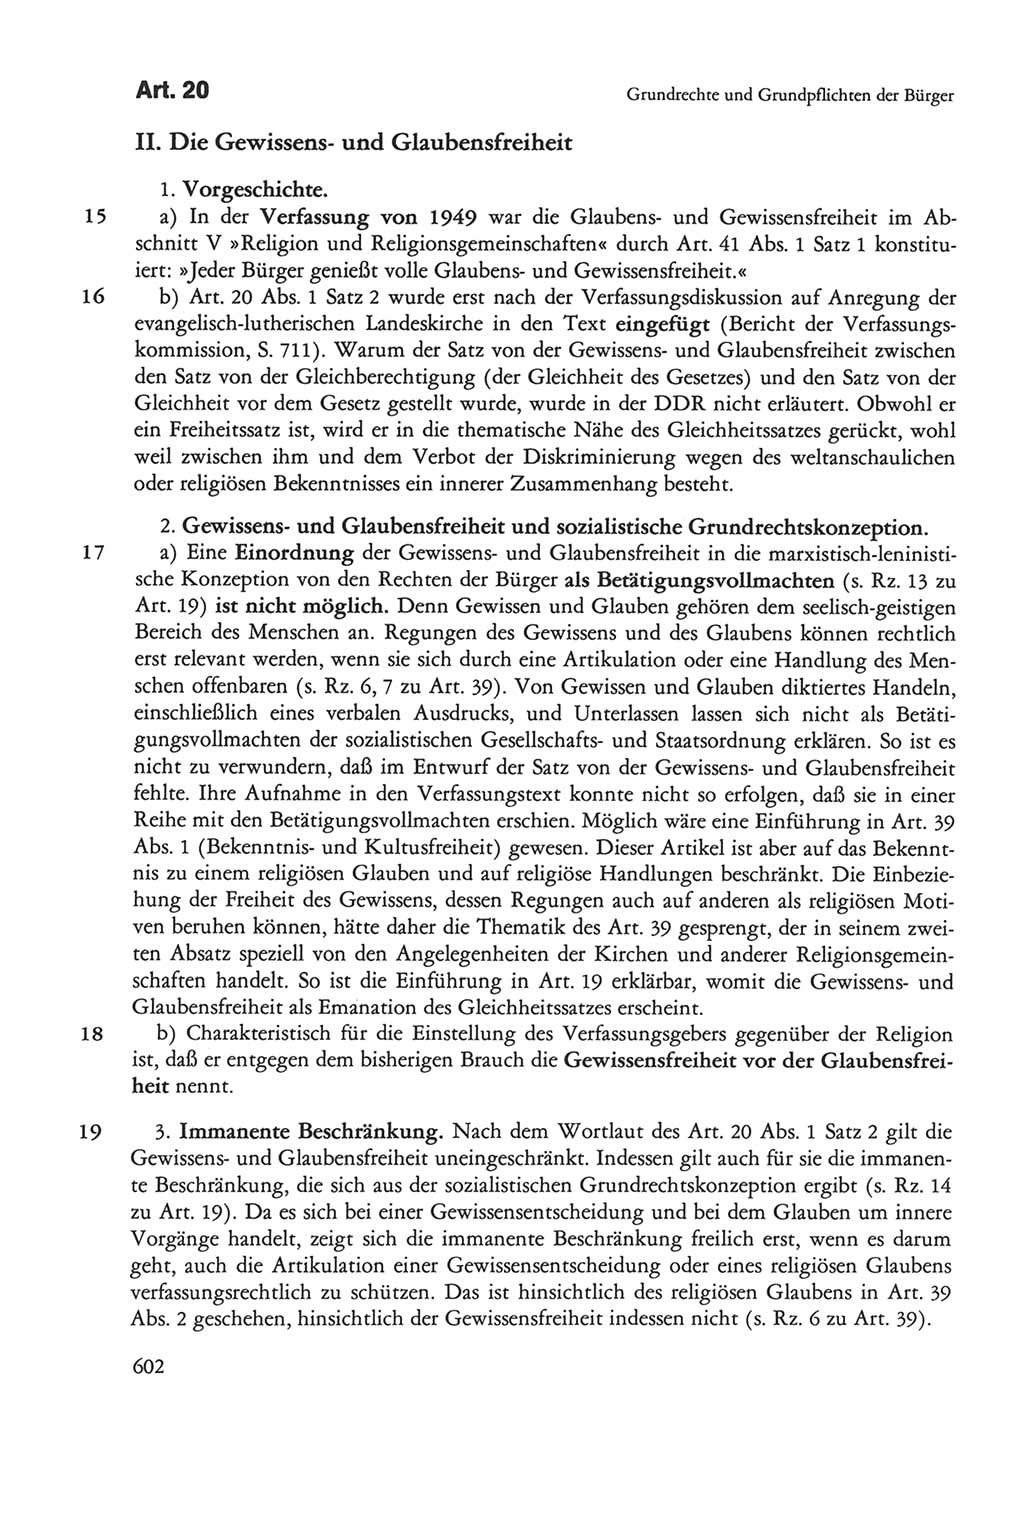 Die sozialistische Verfassung der Deutschen Demokratischen Republik (DDR), Kommentar mit einem Nachtrag 1997, Seite 602 (Soz. Verf. DDR Komm. Nachtr. 1997, S. 602)